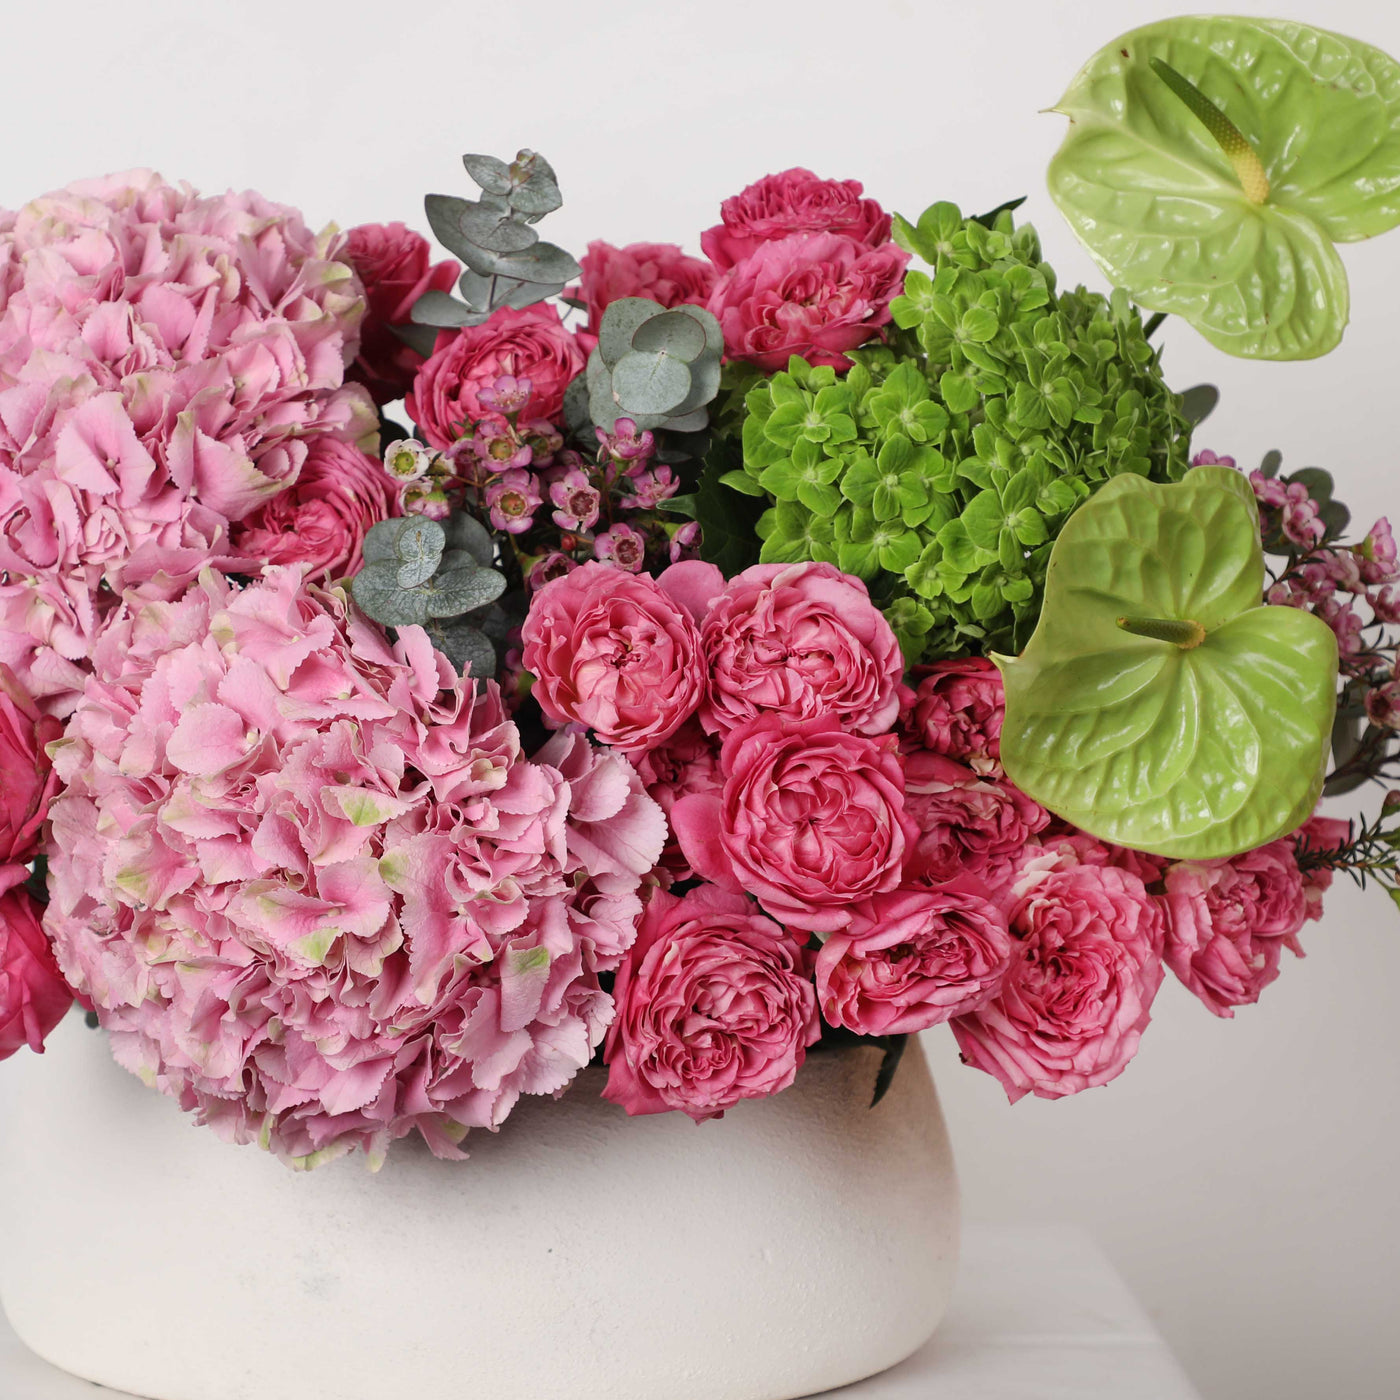 Grandeur Louise Ceramic in Vase - Fresh Flowers